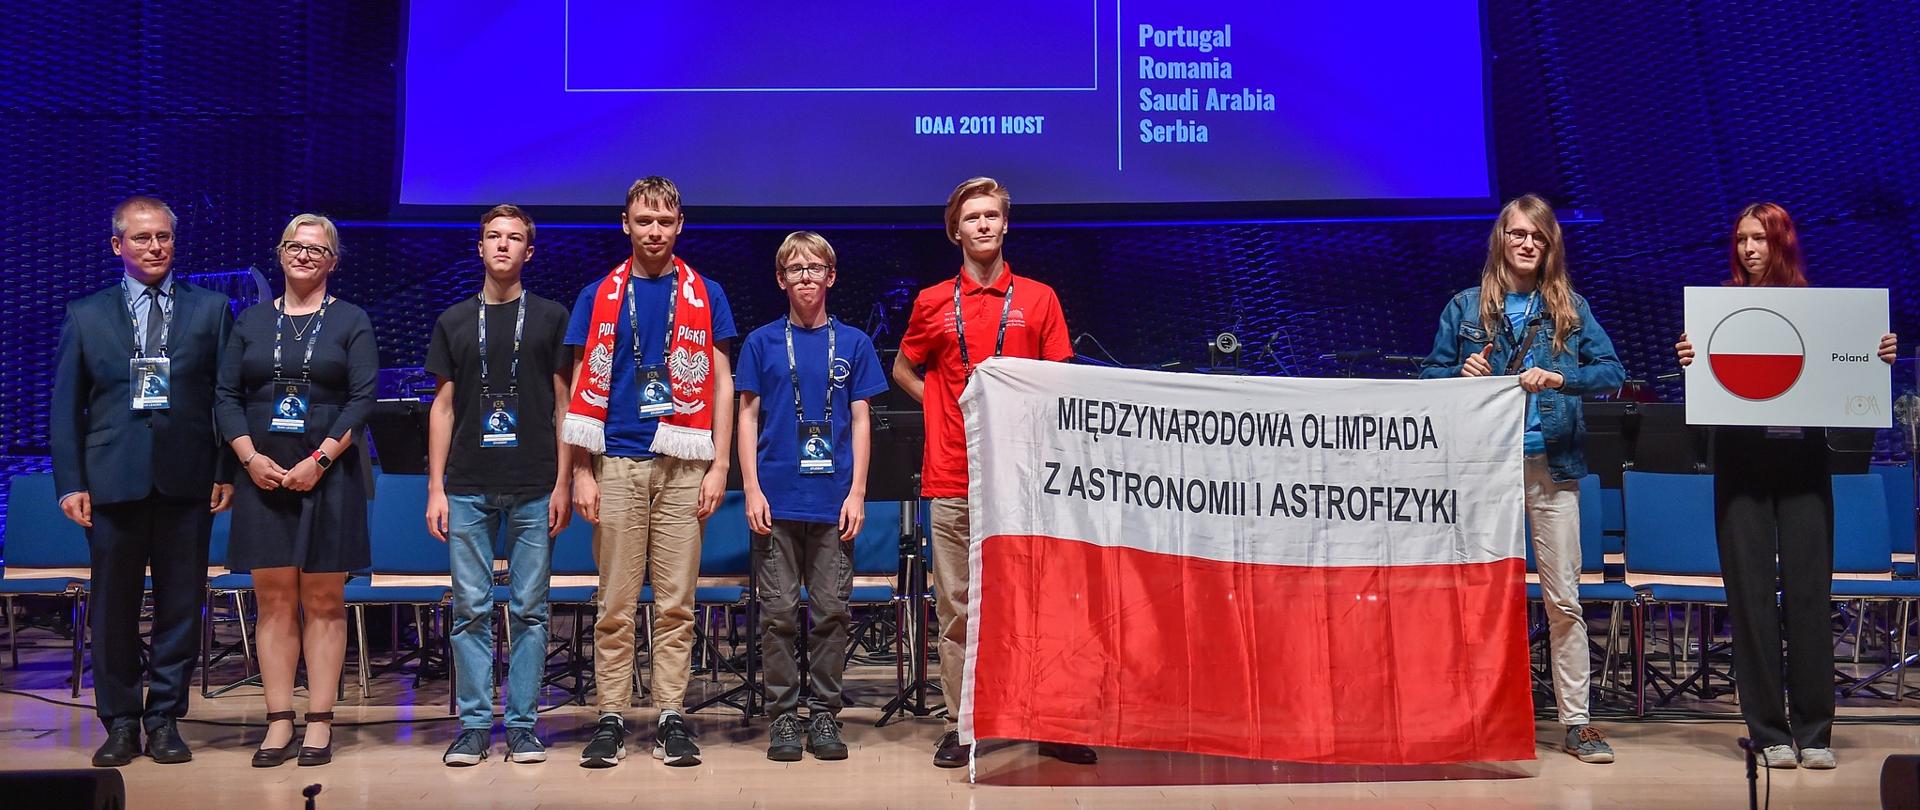 Grupa młodych ludzi stoi na scenie i trzyma flagę Polski. W tle na ekranie wyświetlana jest flaga Polski.